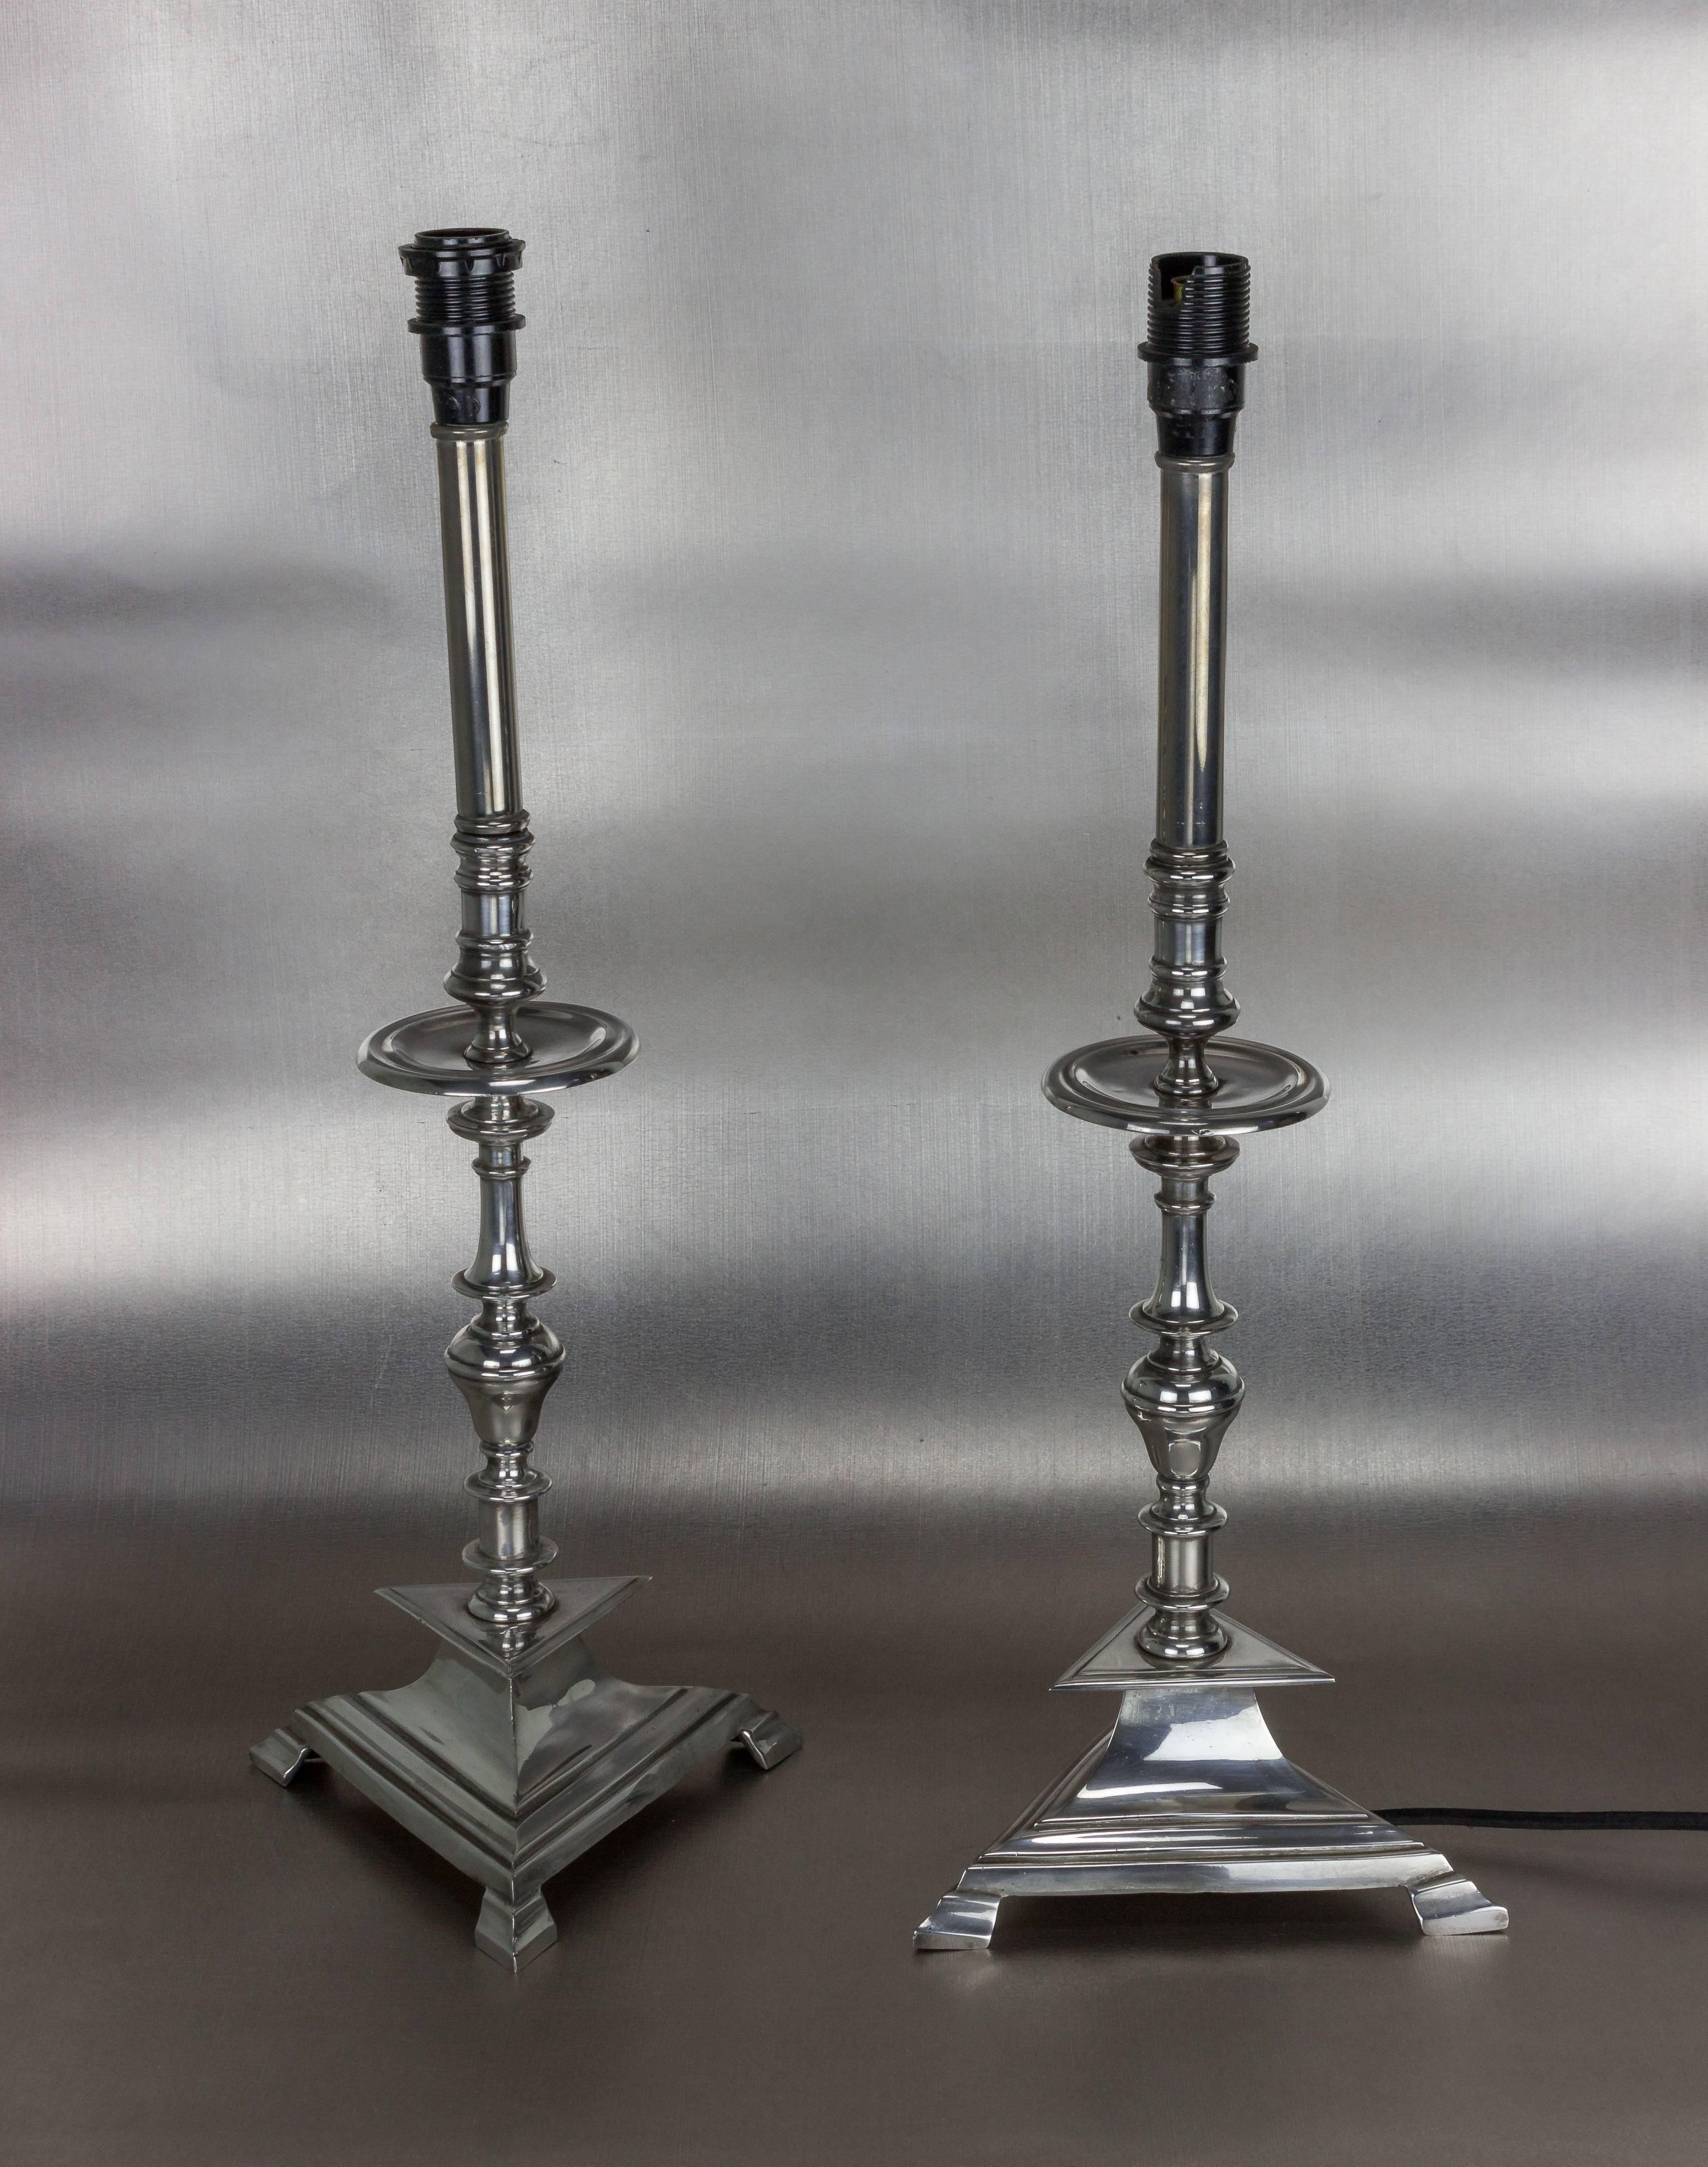 Ein atemberaubendes Paar restaurierter, vernickelter französischer Art-Déco-Tischlampen. Diese Art-Déco-Tischlampen sind ein klassisches Beispiel für herausragendes Vintage-Lichtdesign. Die dreieckigen Sockel mit Fuß verleihen den Lampen ein